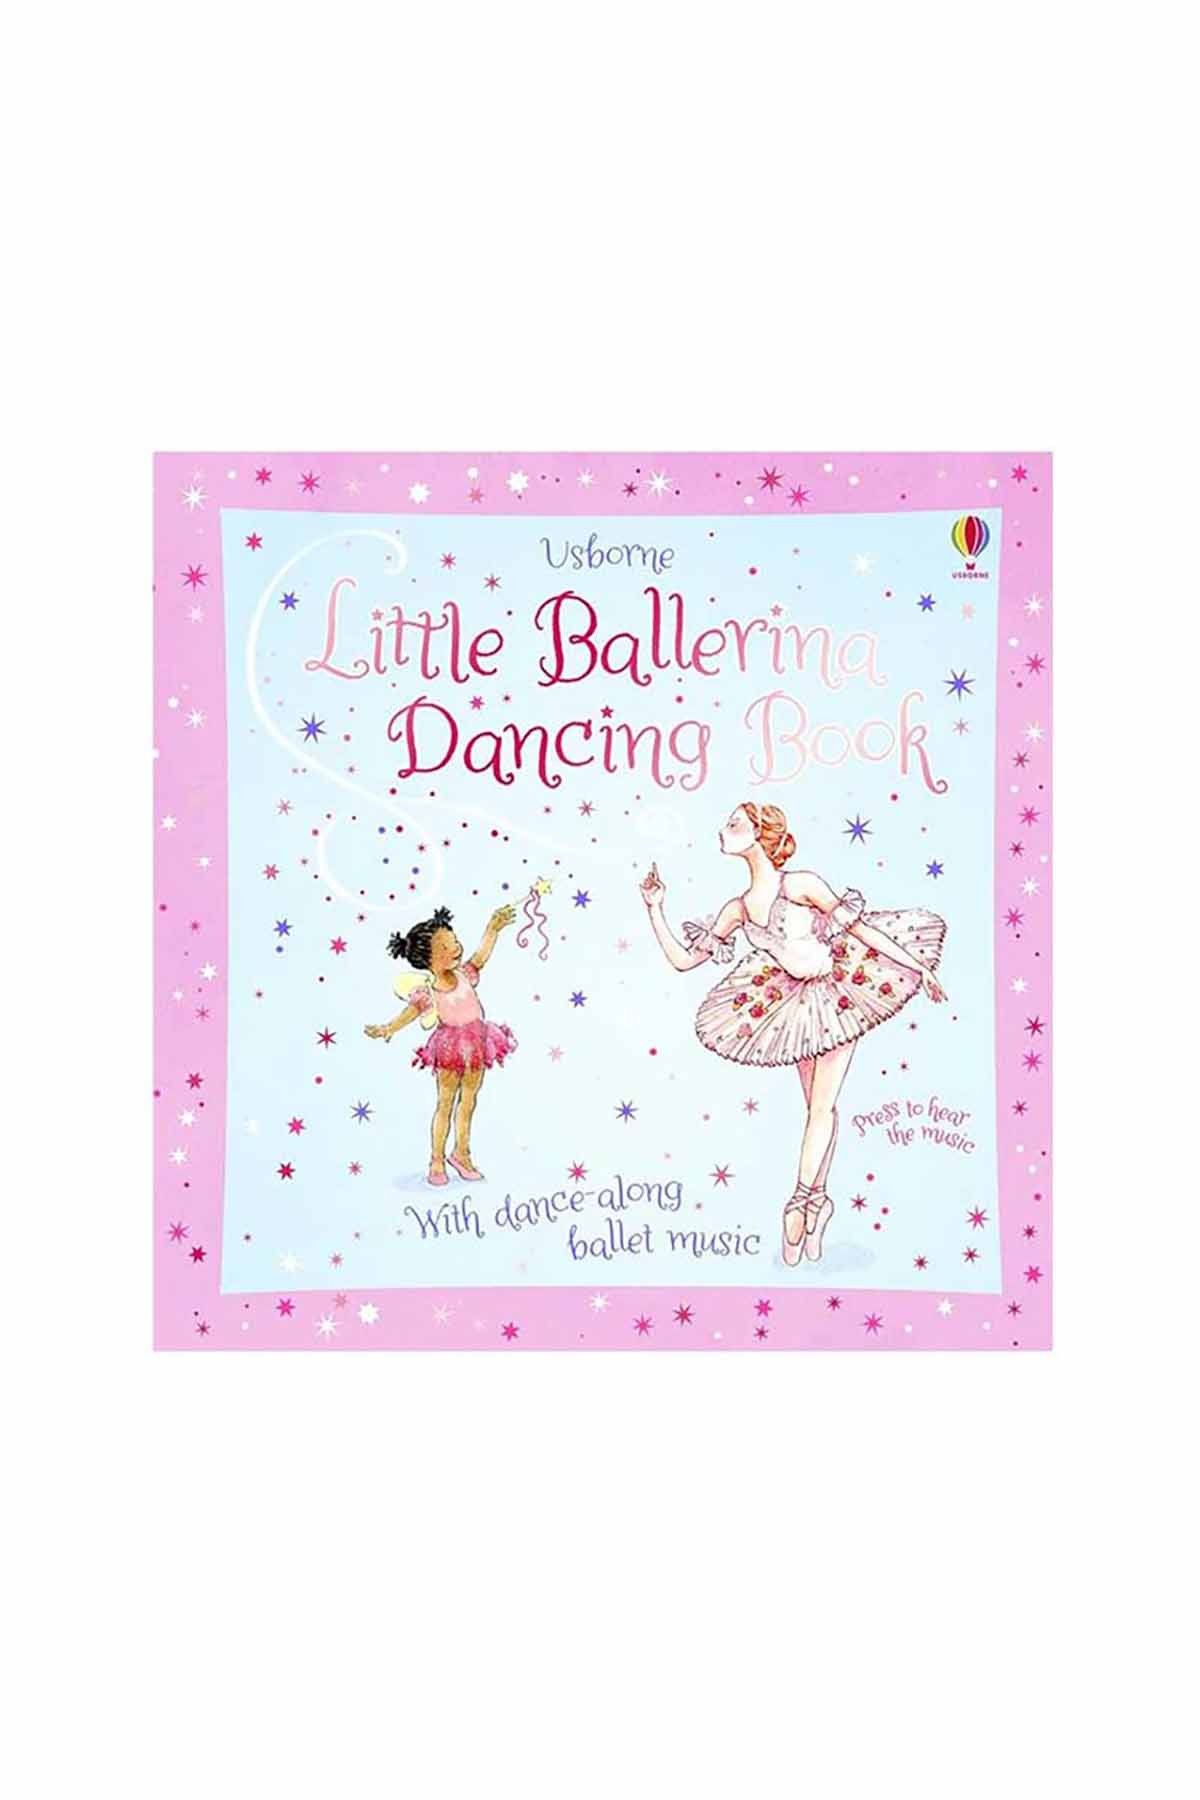 The Usborne Little Ballerina Dancing Book